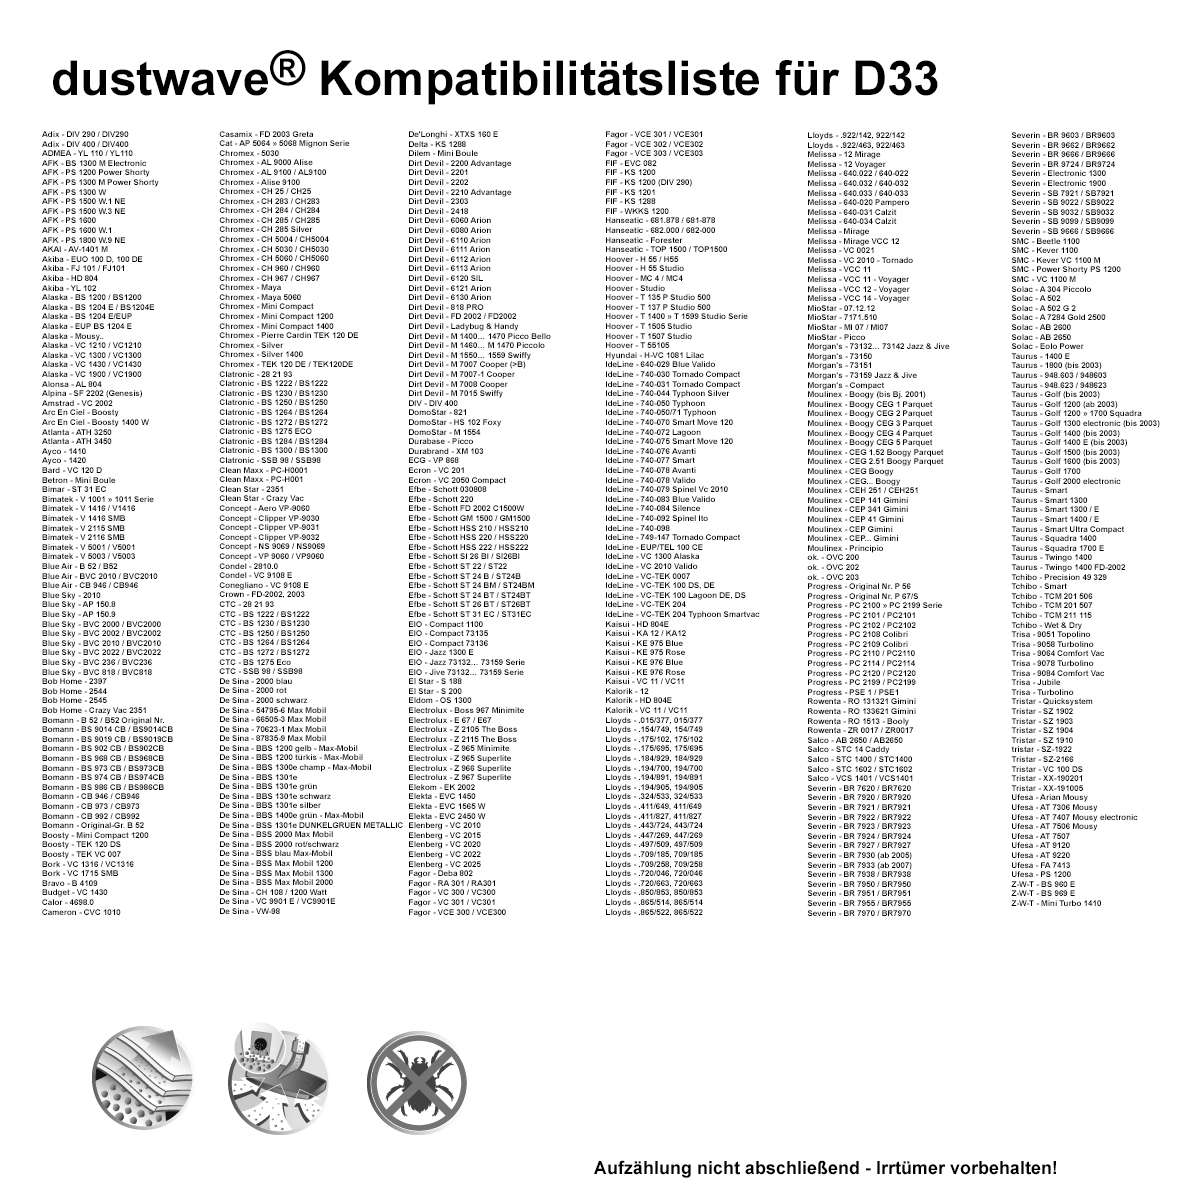 Dustwave® 20 Staubsaugerbeutel für Hoover KITT1505SKD - hocheffizient, mehrlagiges Mikrovlies mit Hygieneverschluss - Made in Germany